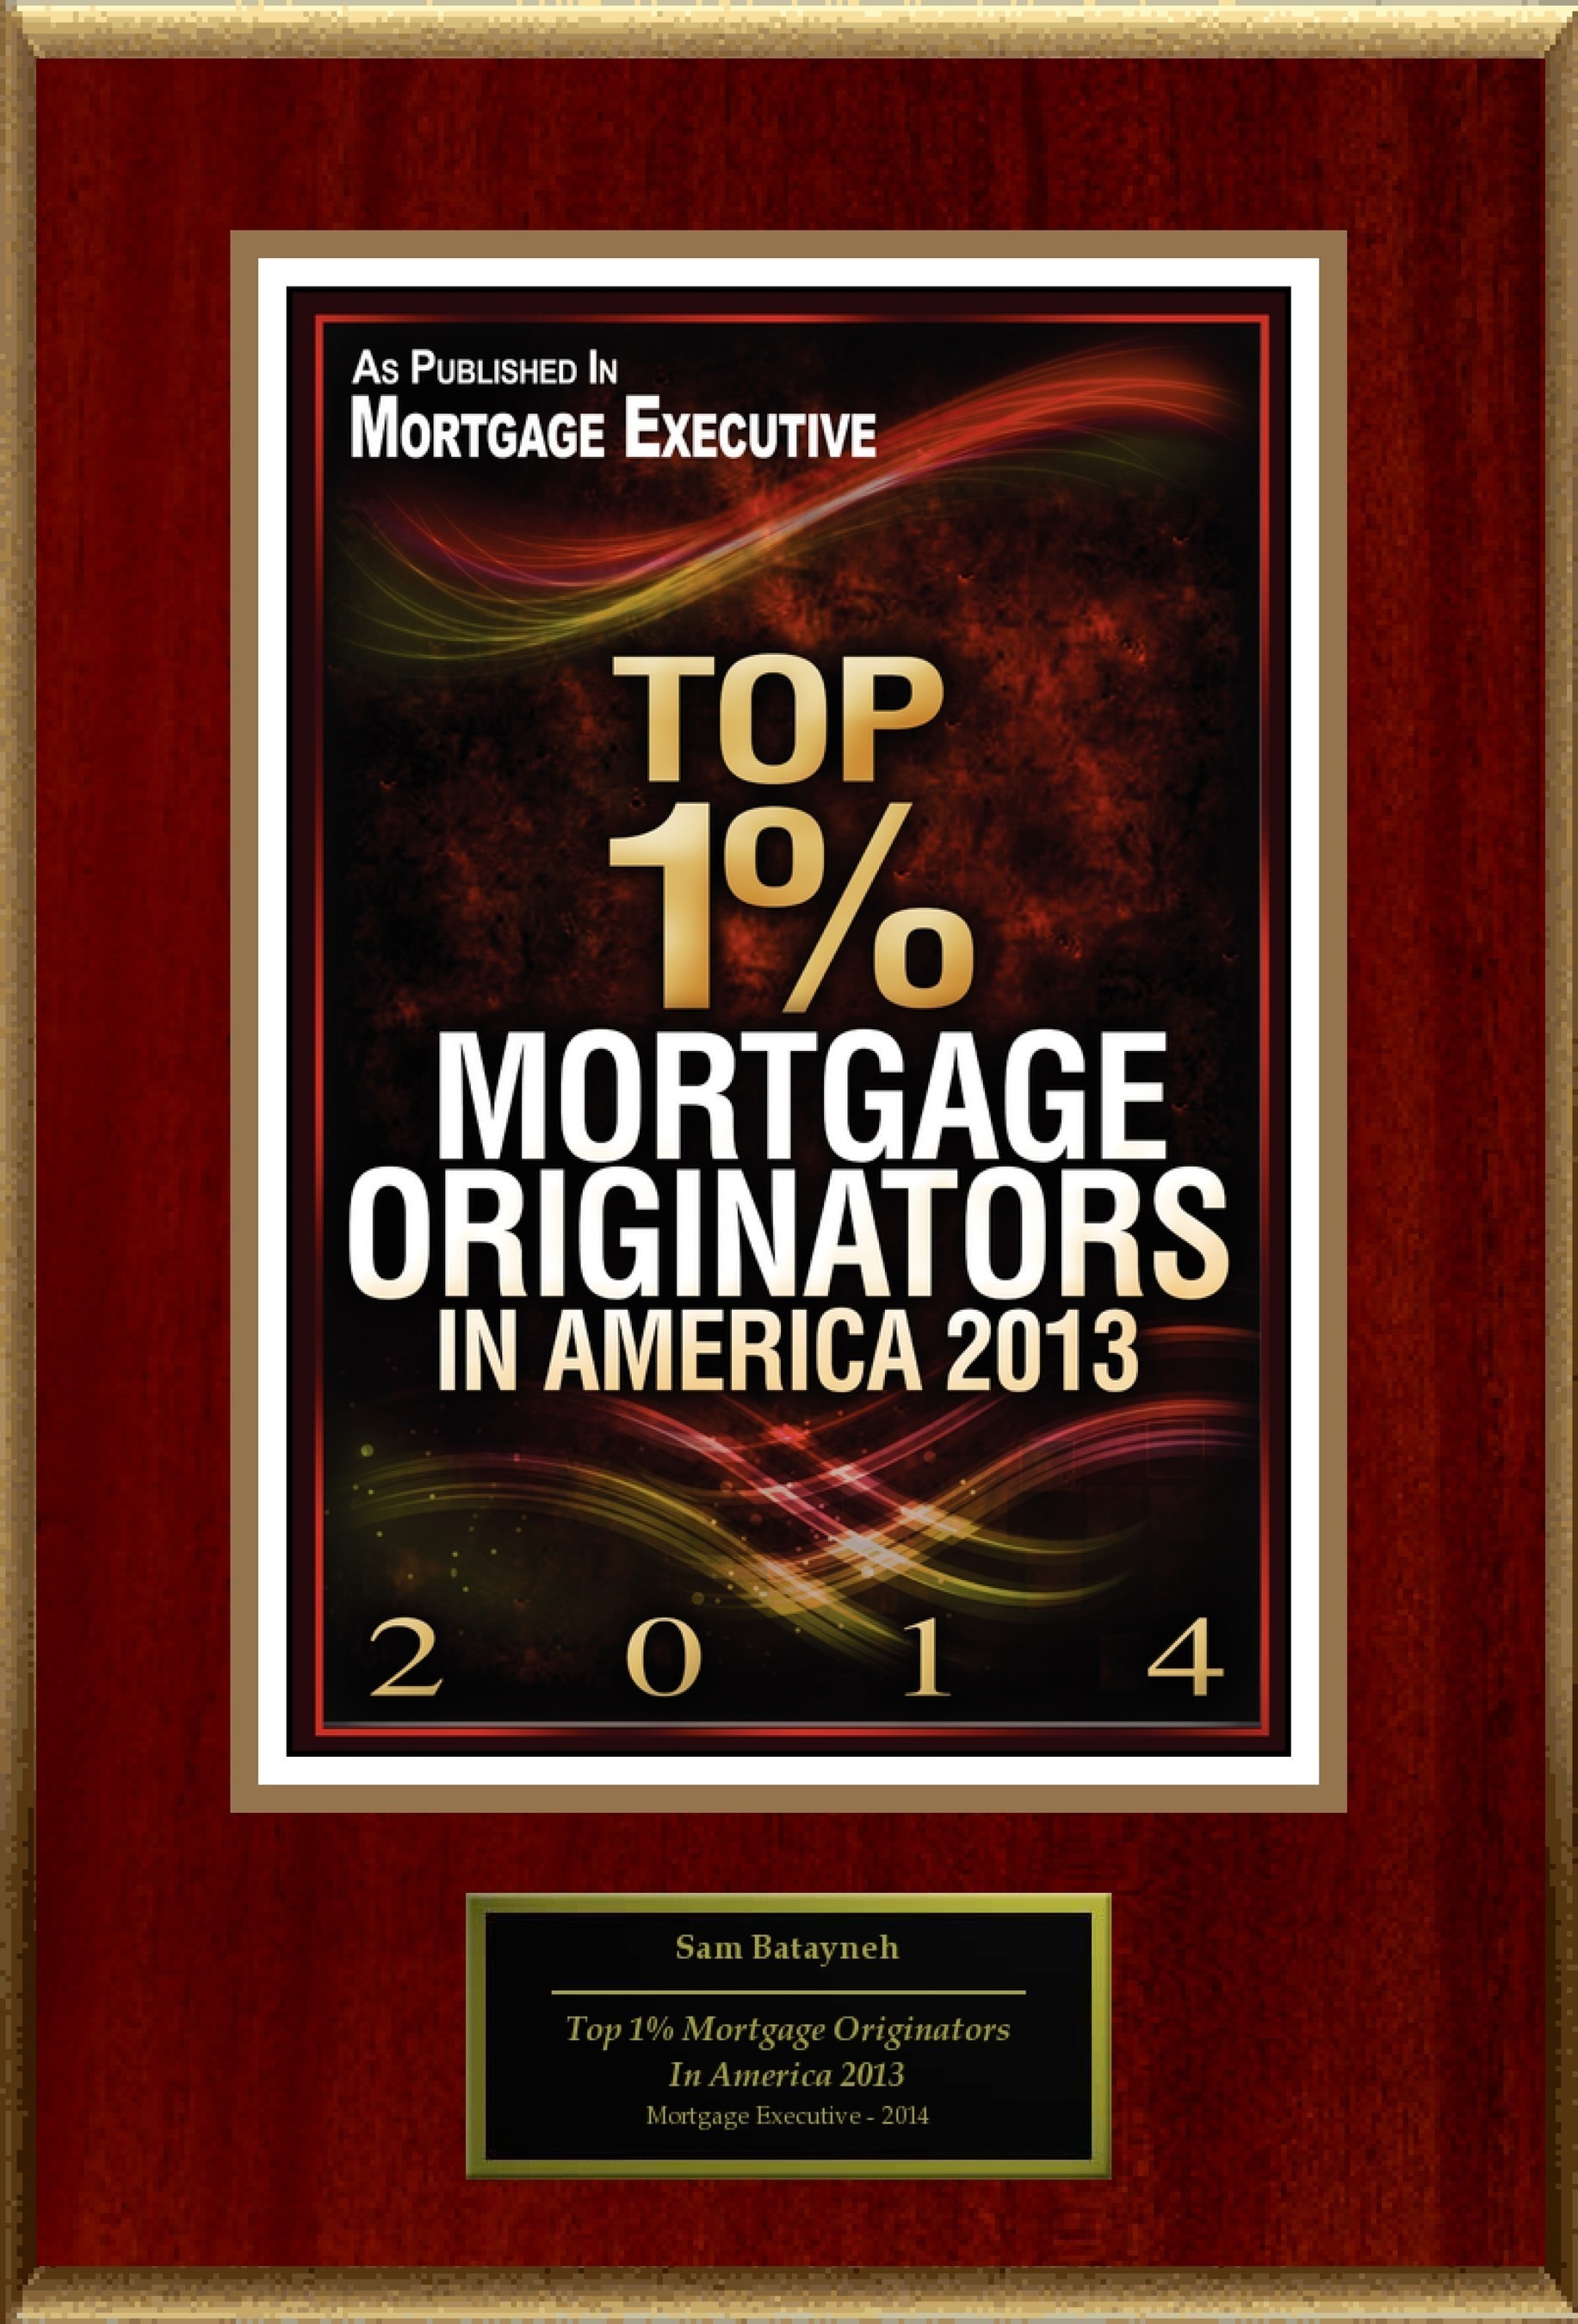 Sam Batayneh Selected For "Top 1% Mortgage Originators In America 2013" (PRNewsFoto/American Registry)